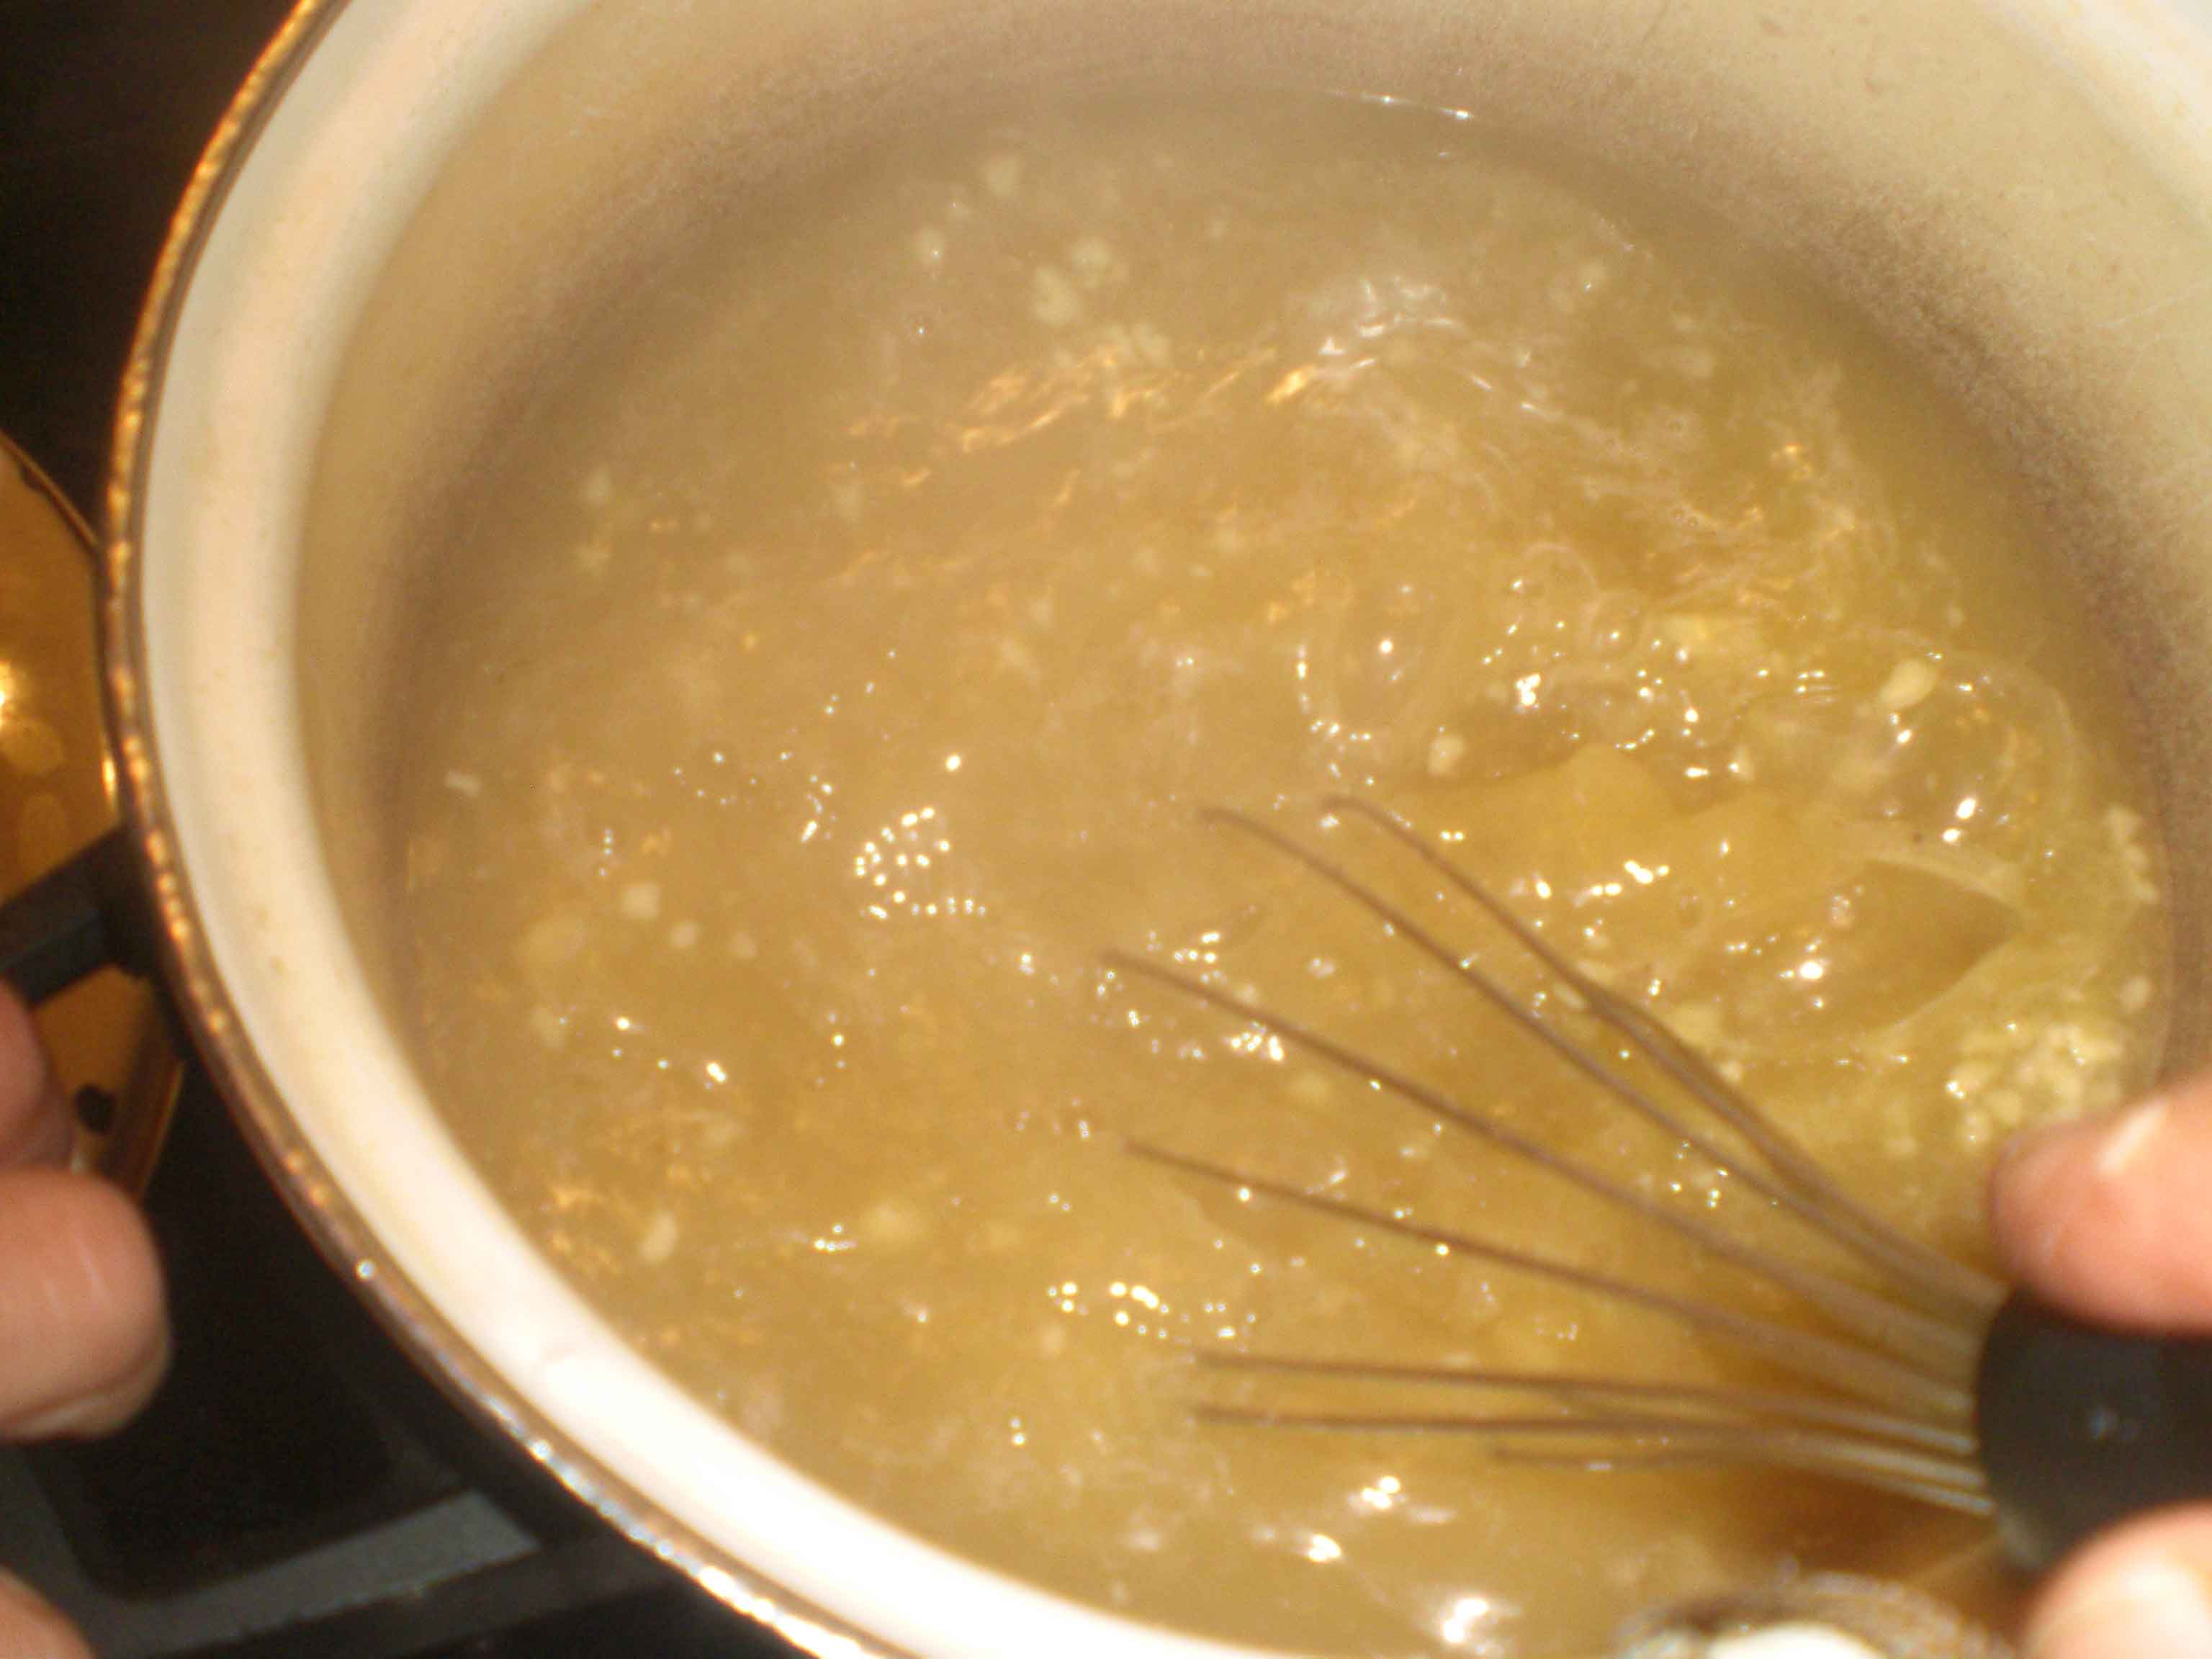 Pisk smørbollen ud i suppen.